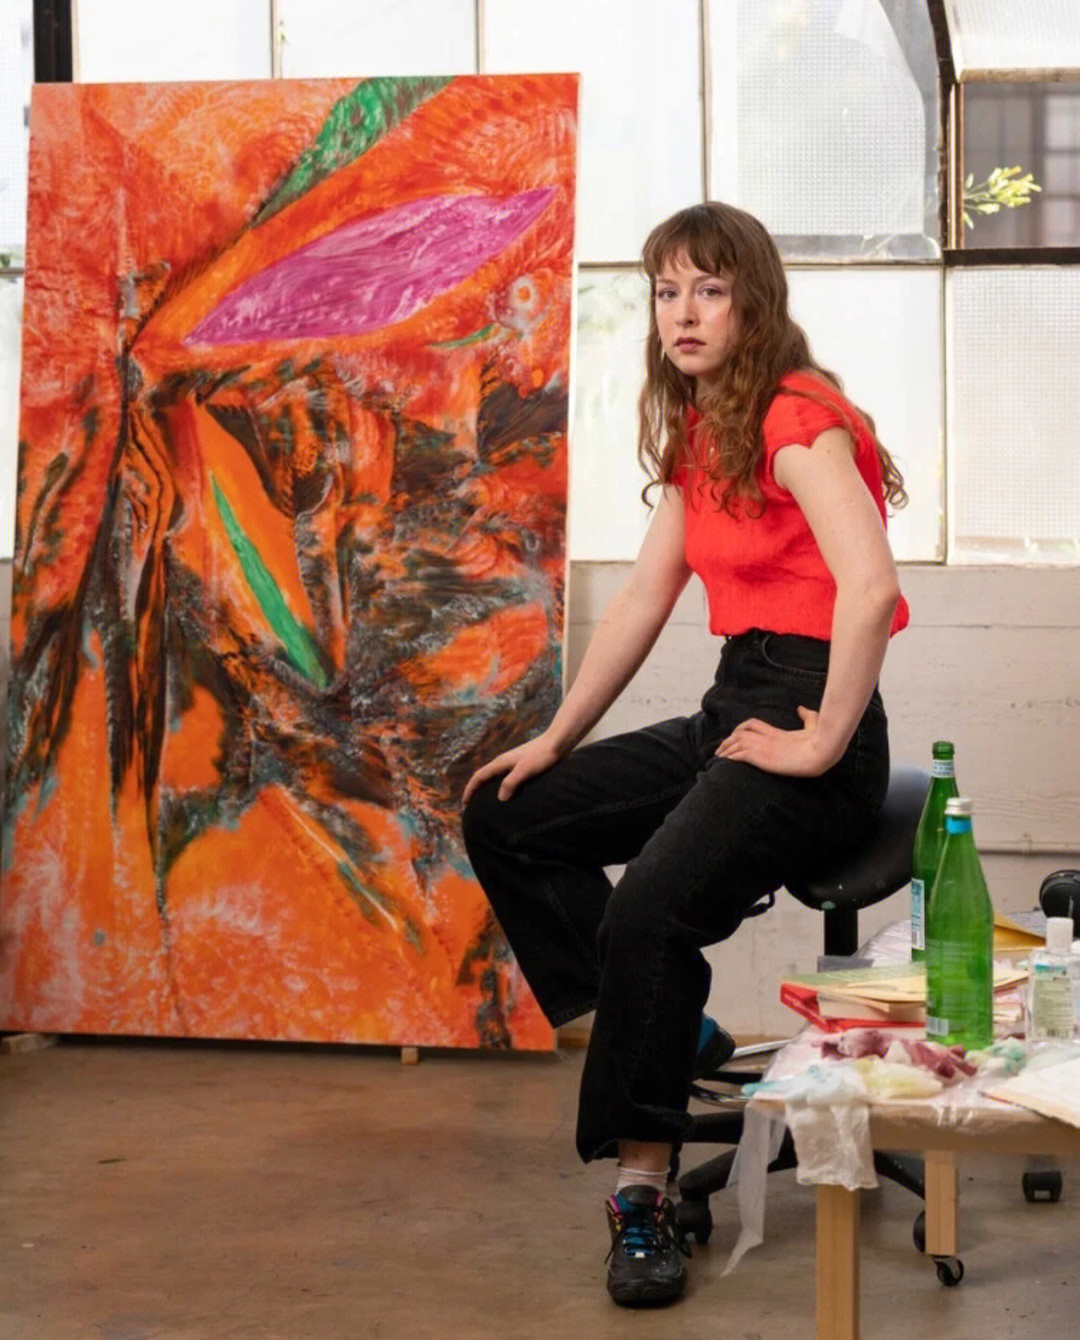 lucybull(露西·布尔)1990年生于纽约,2012年获得芝加哥艺术学院艺术